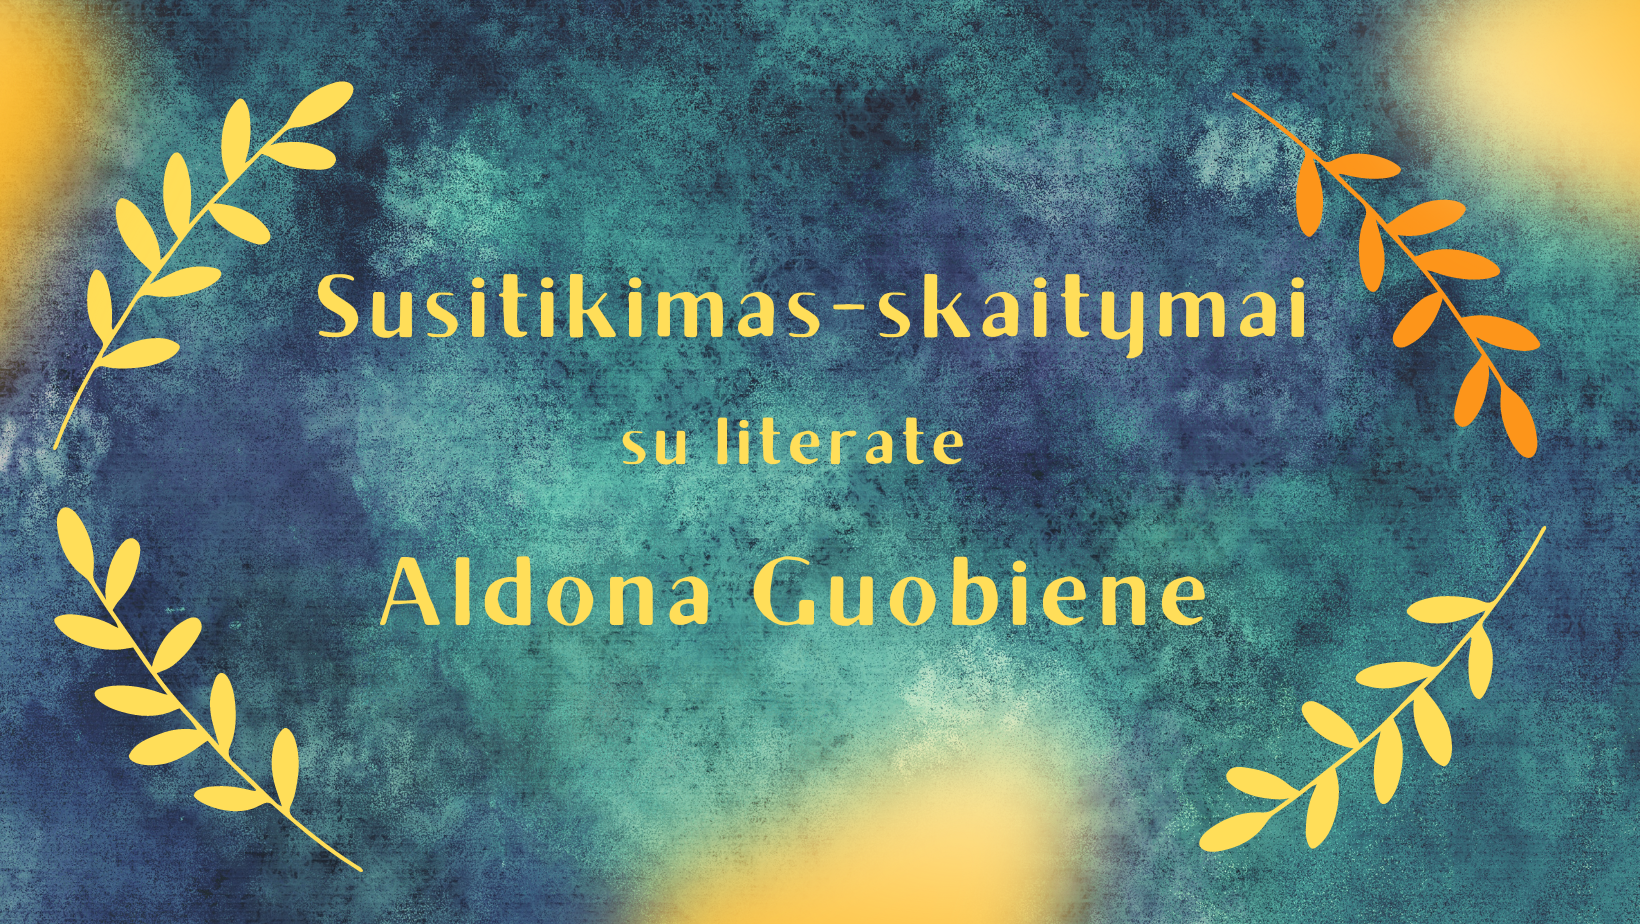 Susitikimas-skaitymai su literate Aldona Guobiene